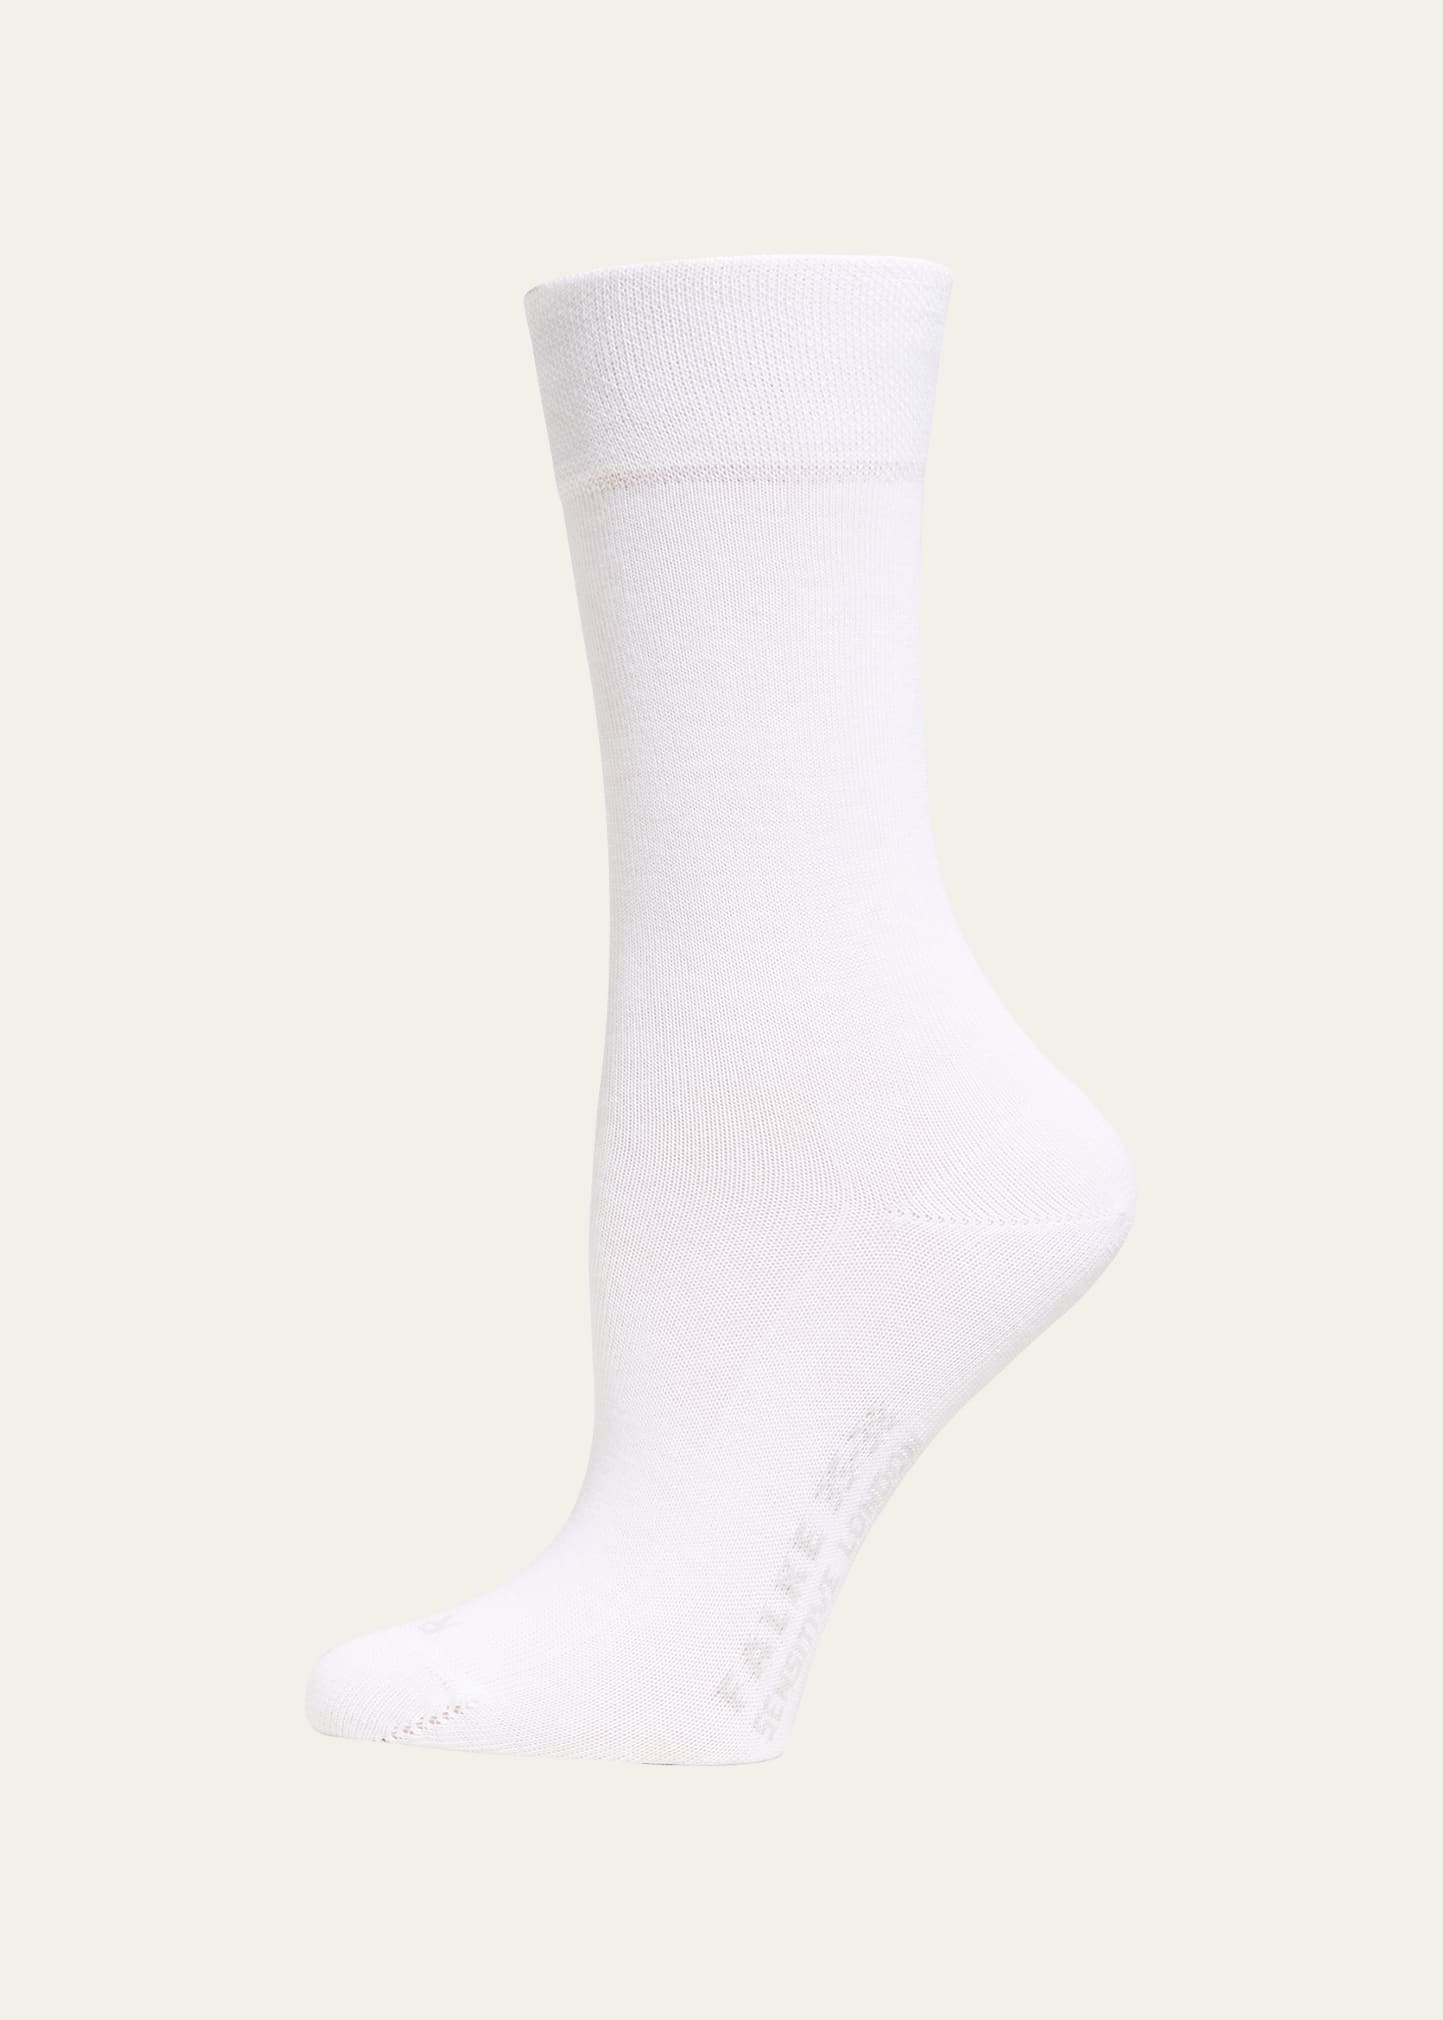 Falke London Ankle Socks In Light Grey